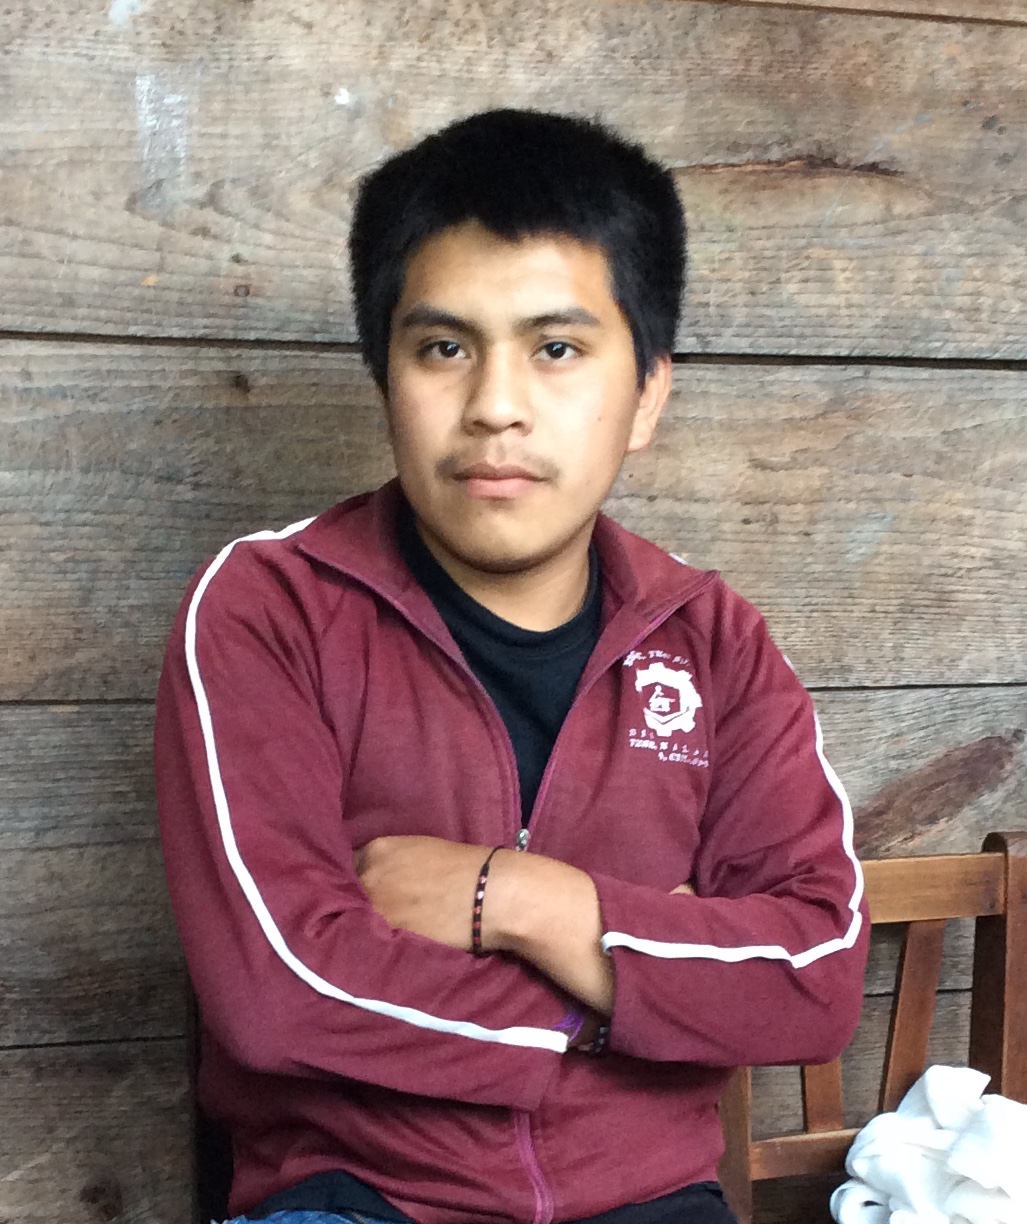 Der 20-jährige Alonso Méndez hat vor zwei Jahren bei einem Unfall sein linkes Bein verloren. Er braucht dringend eine Prothese. Mehr Informationen finden Sie unter dem Artikel.